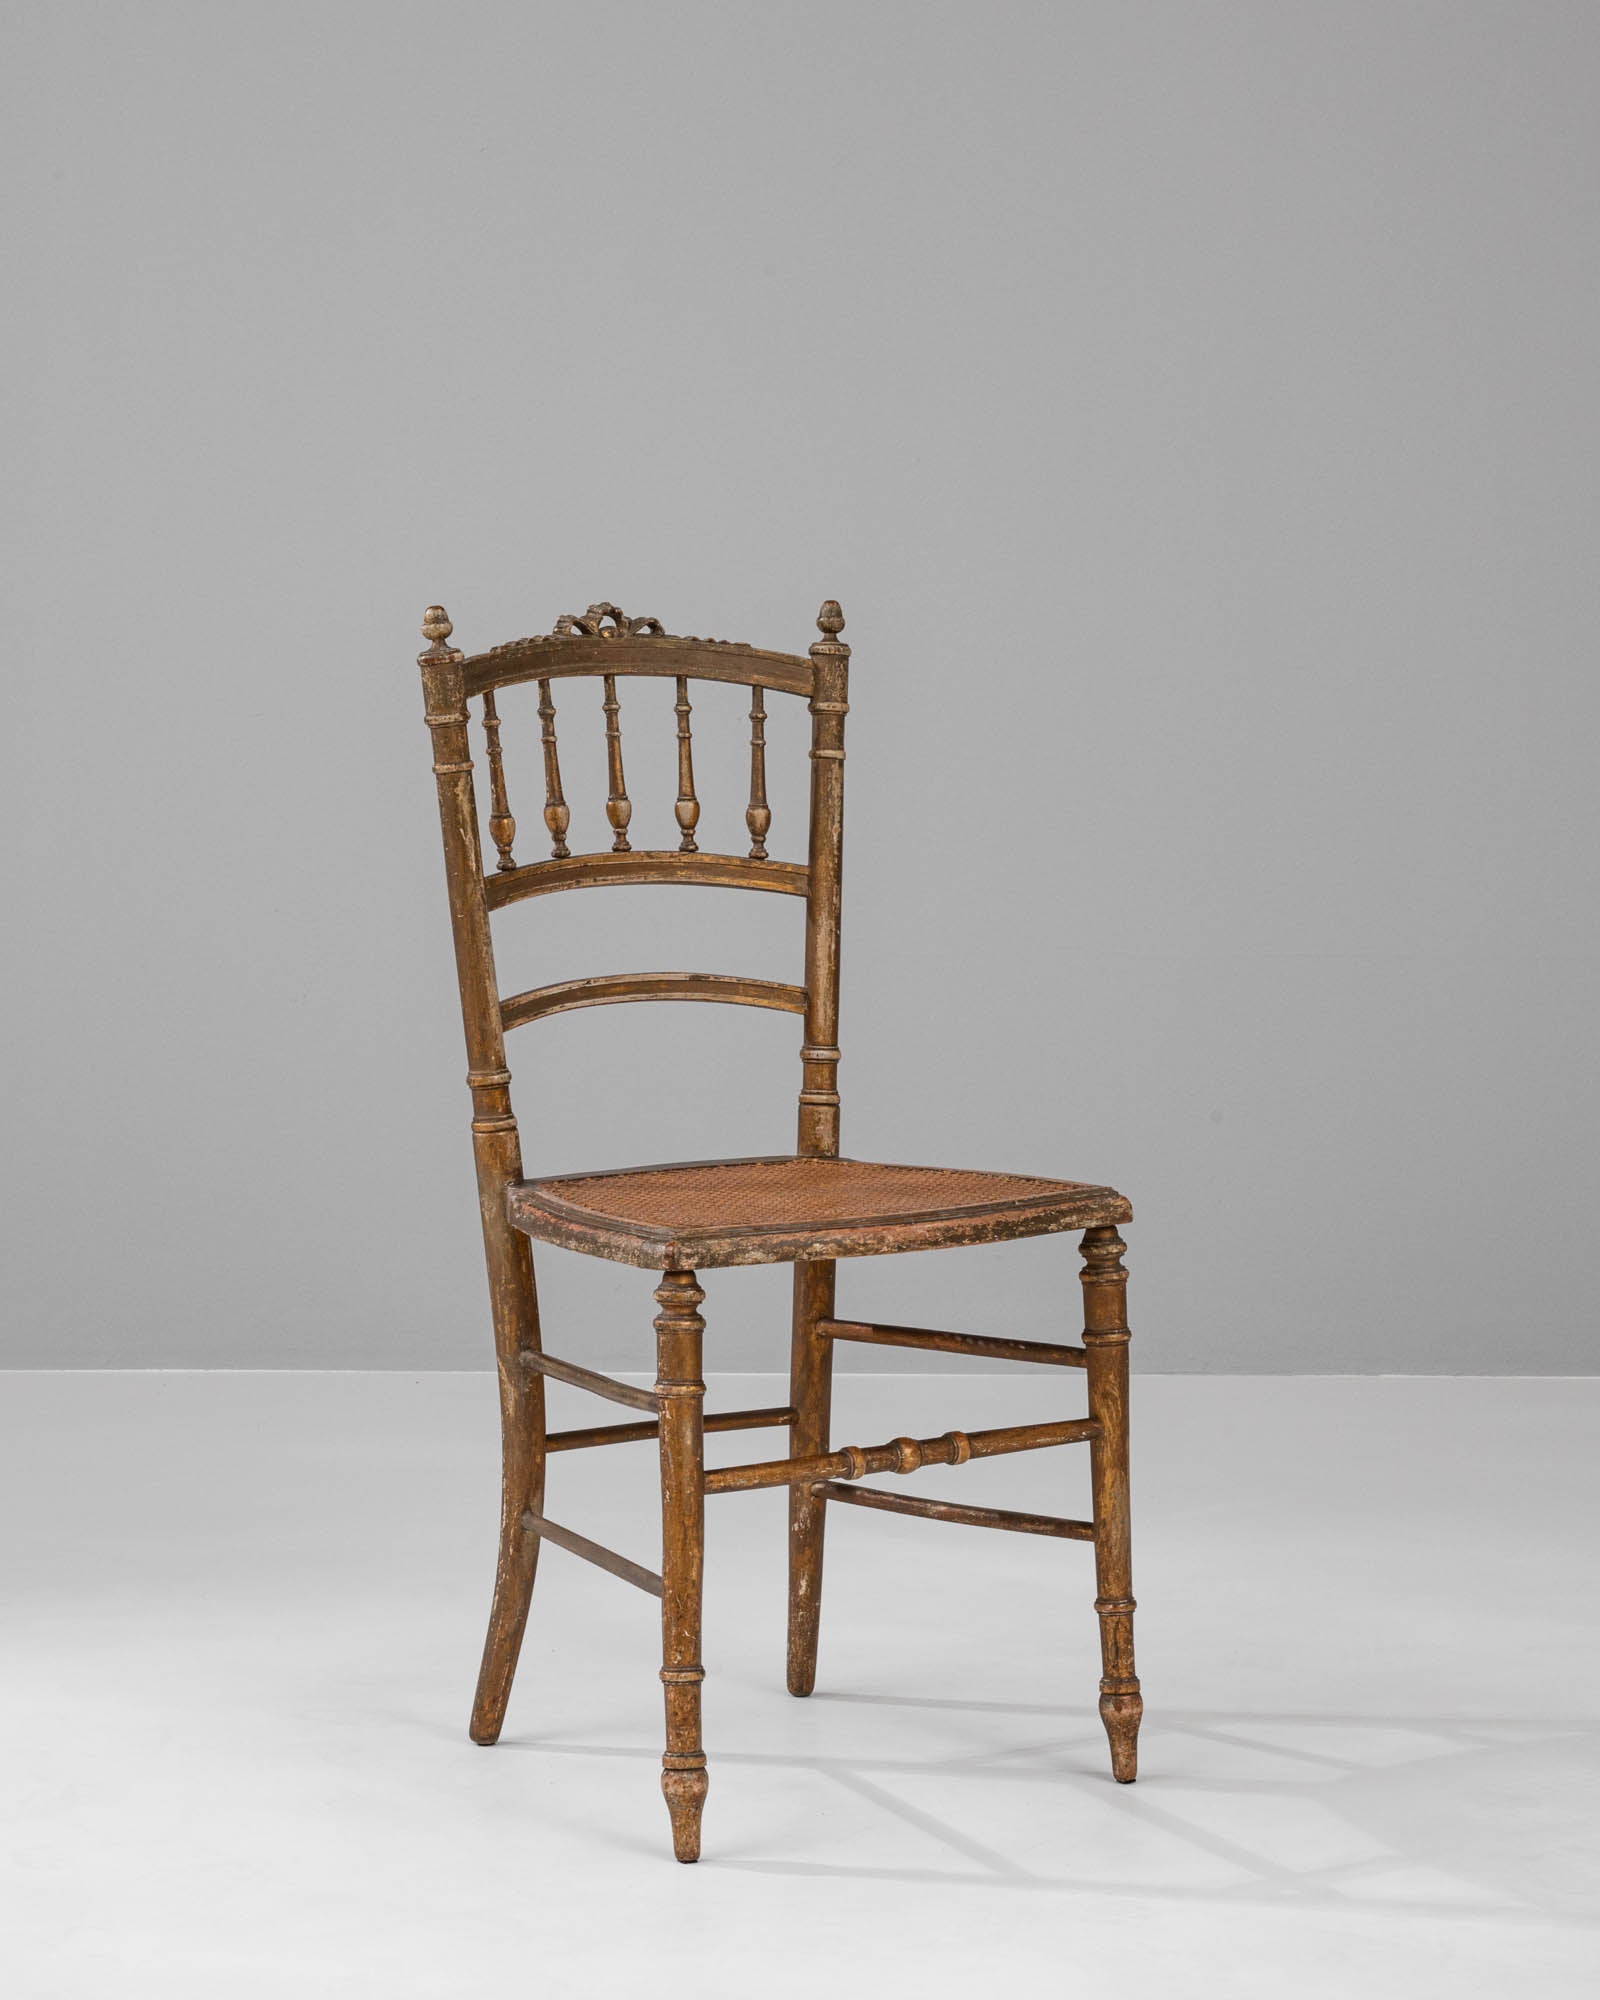 Entrez dans une ère révolue d'élégance et de charme avec notre authentique chaise en bois française des années 1880. Cette pièce historique exquise est fabriquée avec une attention méticuleuse aux détails, comme en témoignent les fuseaux tournés et